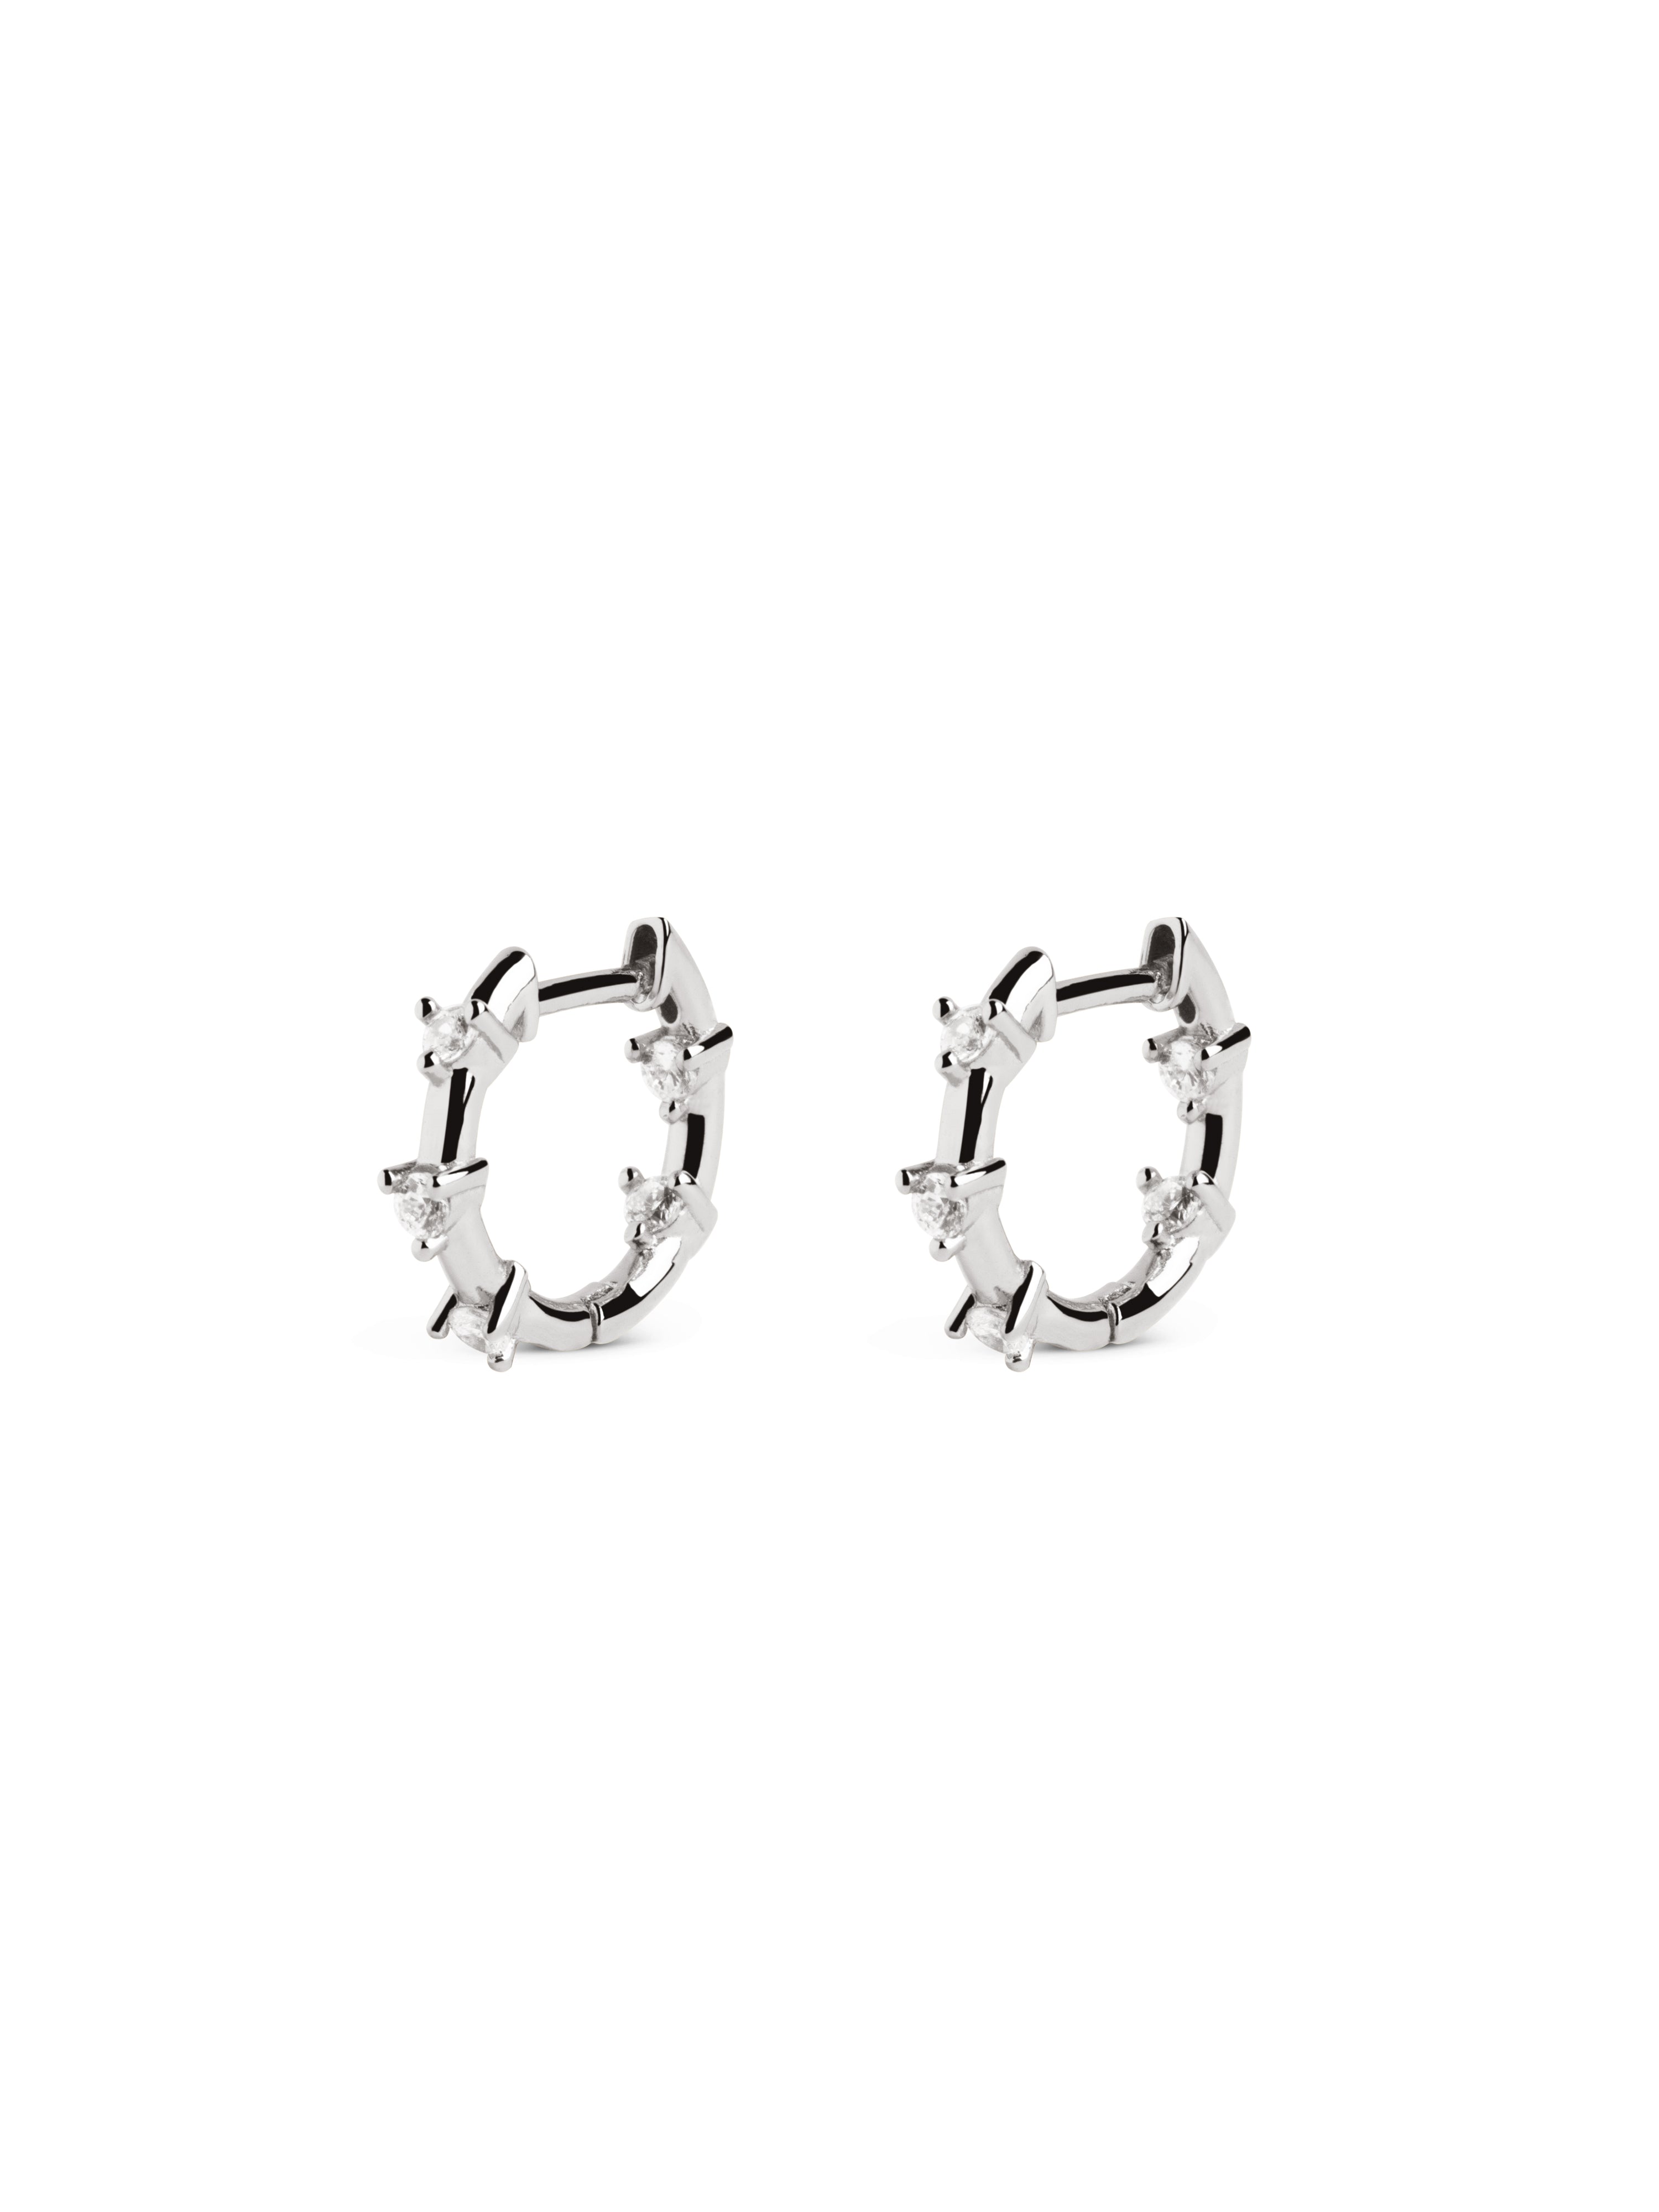 5 Sparks Silver Hoop Earrings